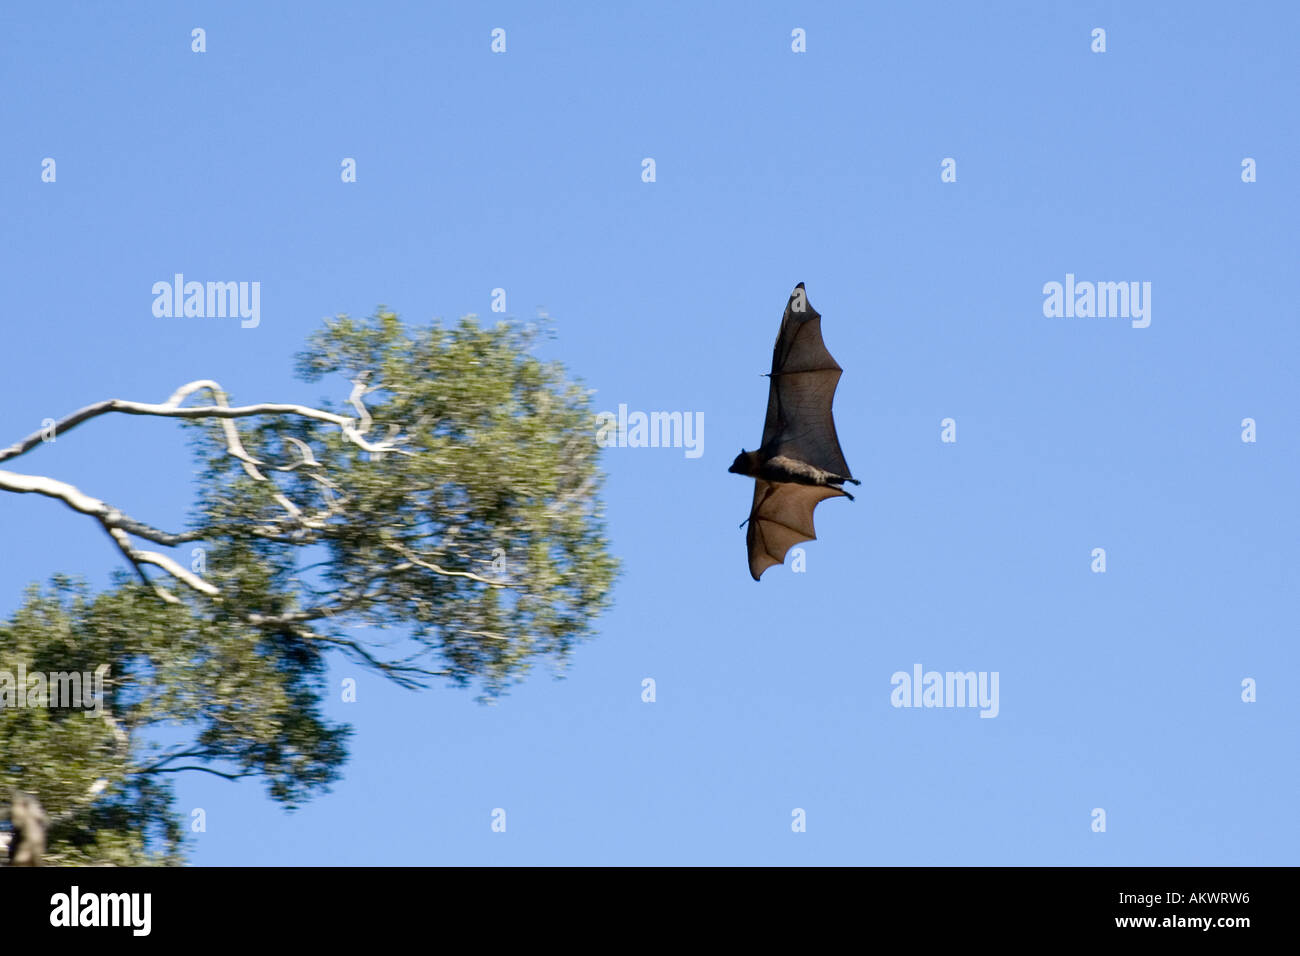 Testa Grigia Flying Fox, Pteropus poliocephalus. Endemico in Australia orientale e sono elencati come vulnerabili sulla Lista Rossa IUCN delle specie minacciate. Foto Stock